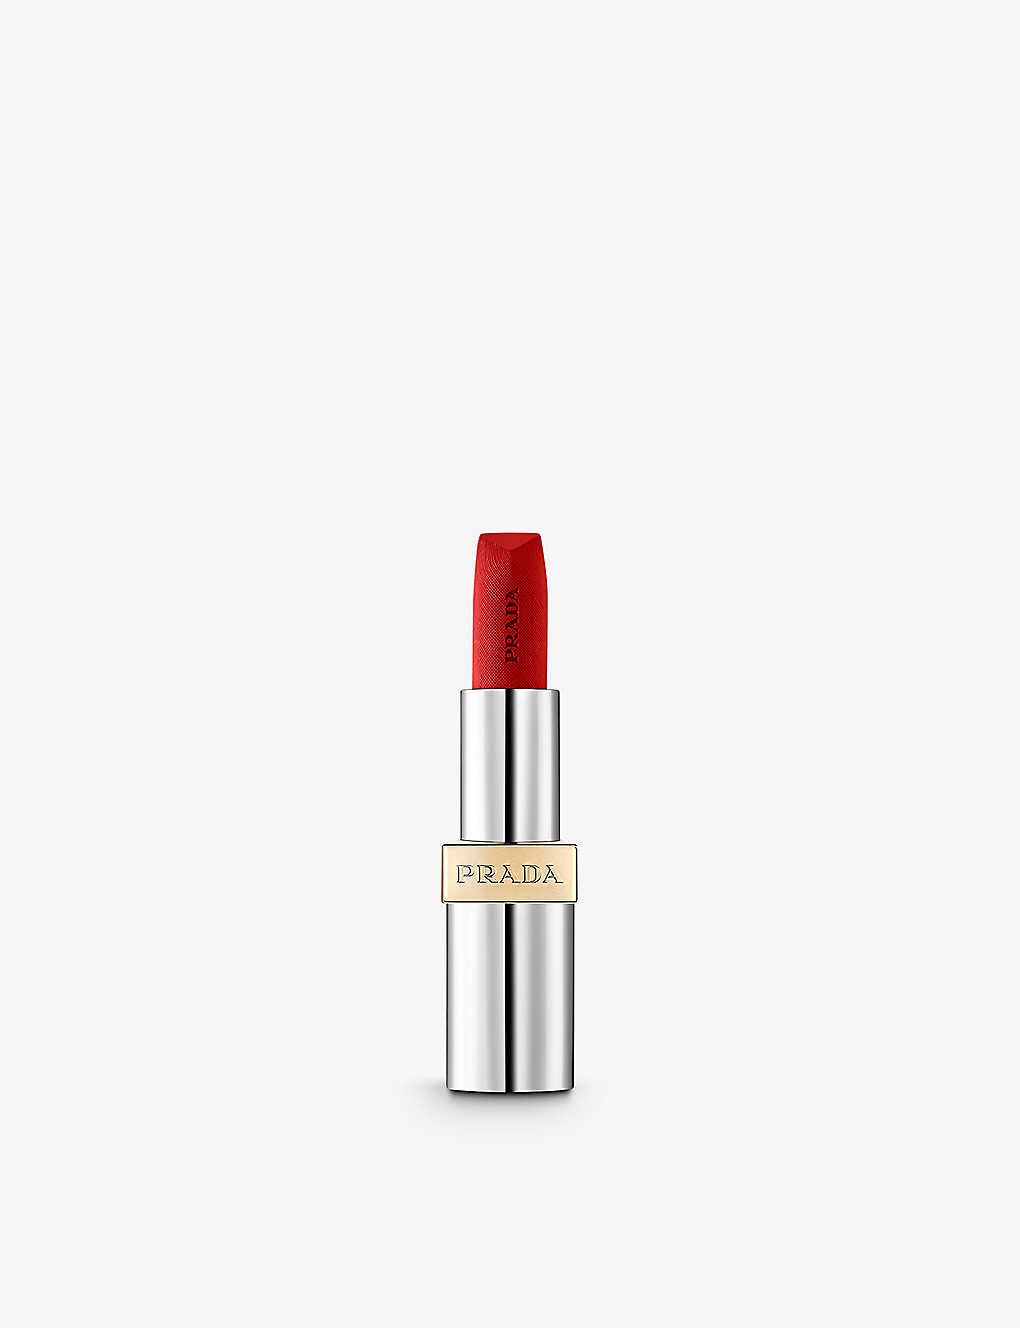 Prada Fuoco Hyper Matte Monochrome Refillable Lipstick 3.8g